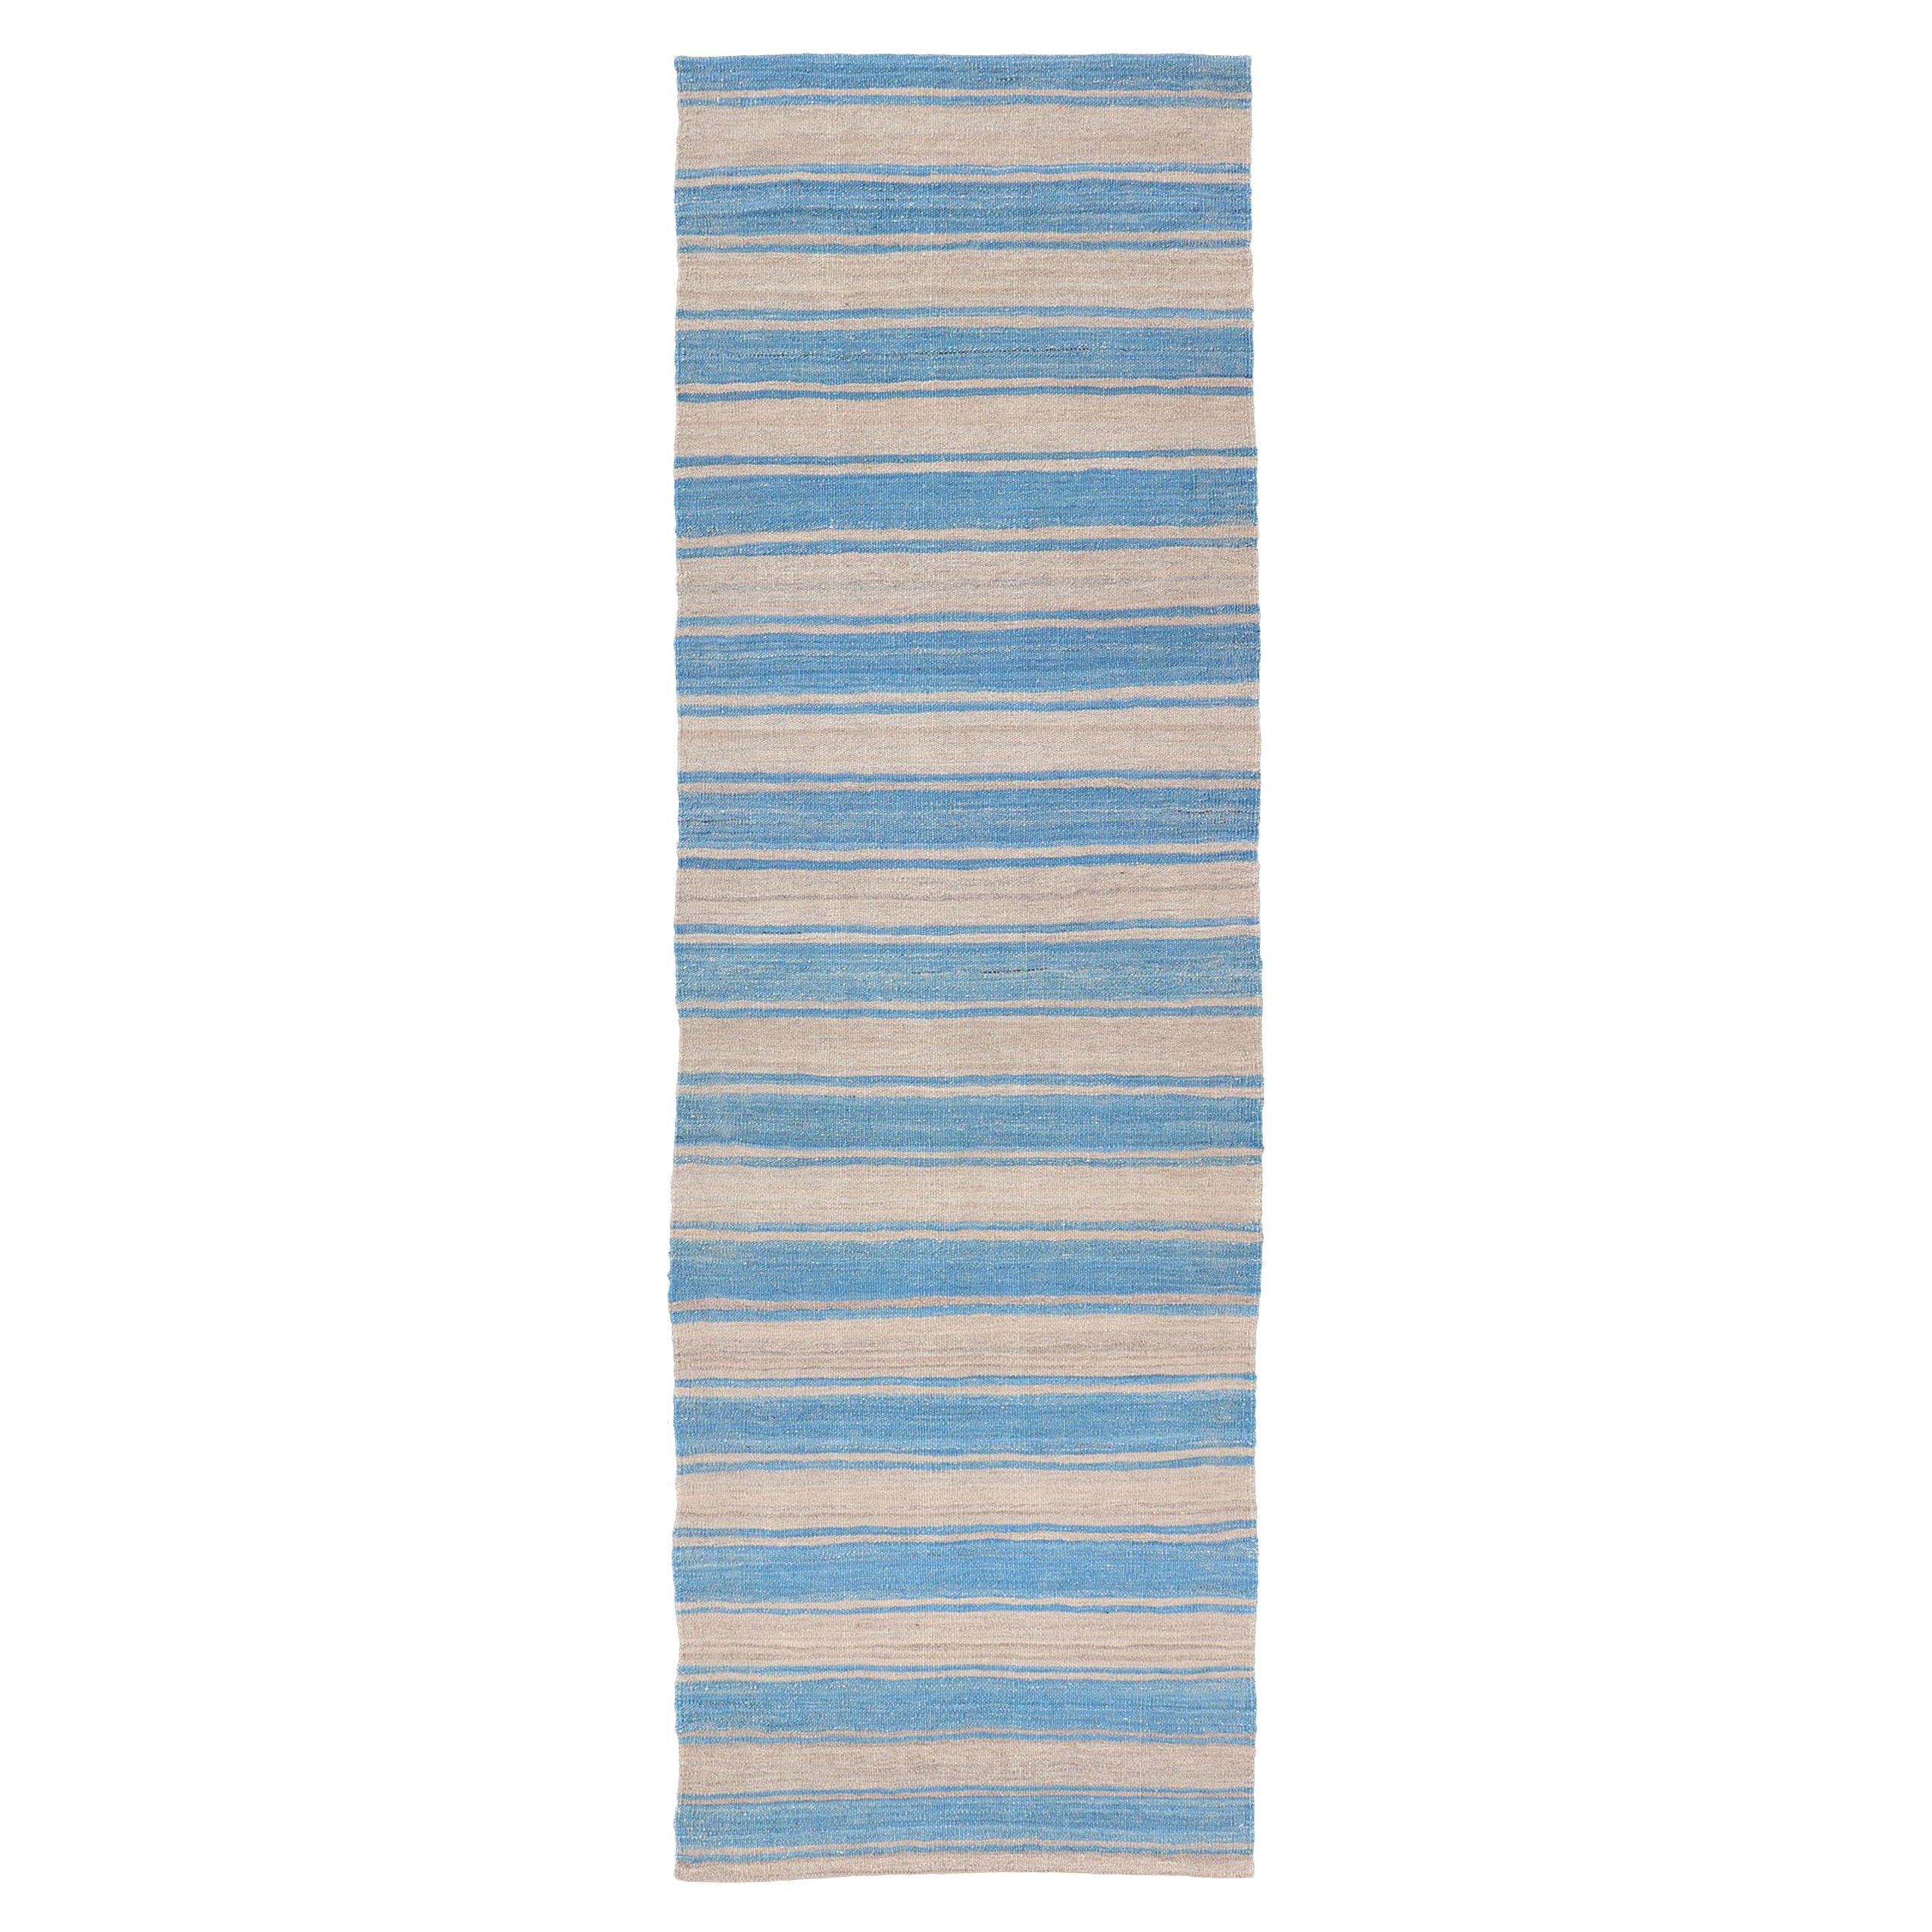 Moderner Flachgewebter Kelim-Teppich mit Streifen in Blau- und Grautönen